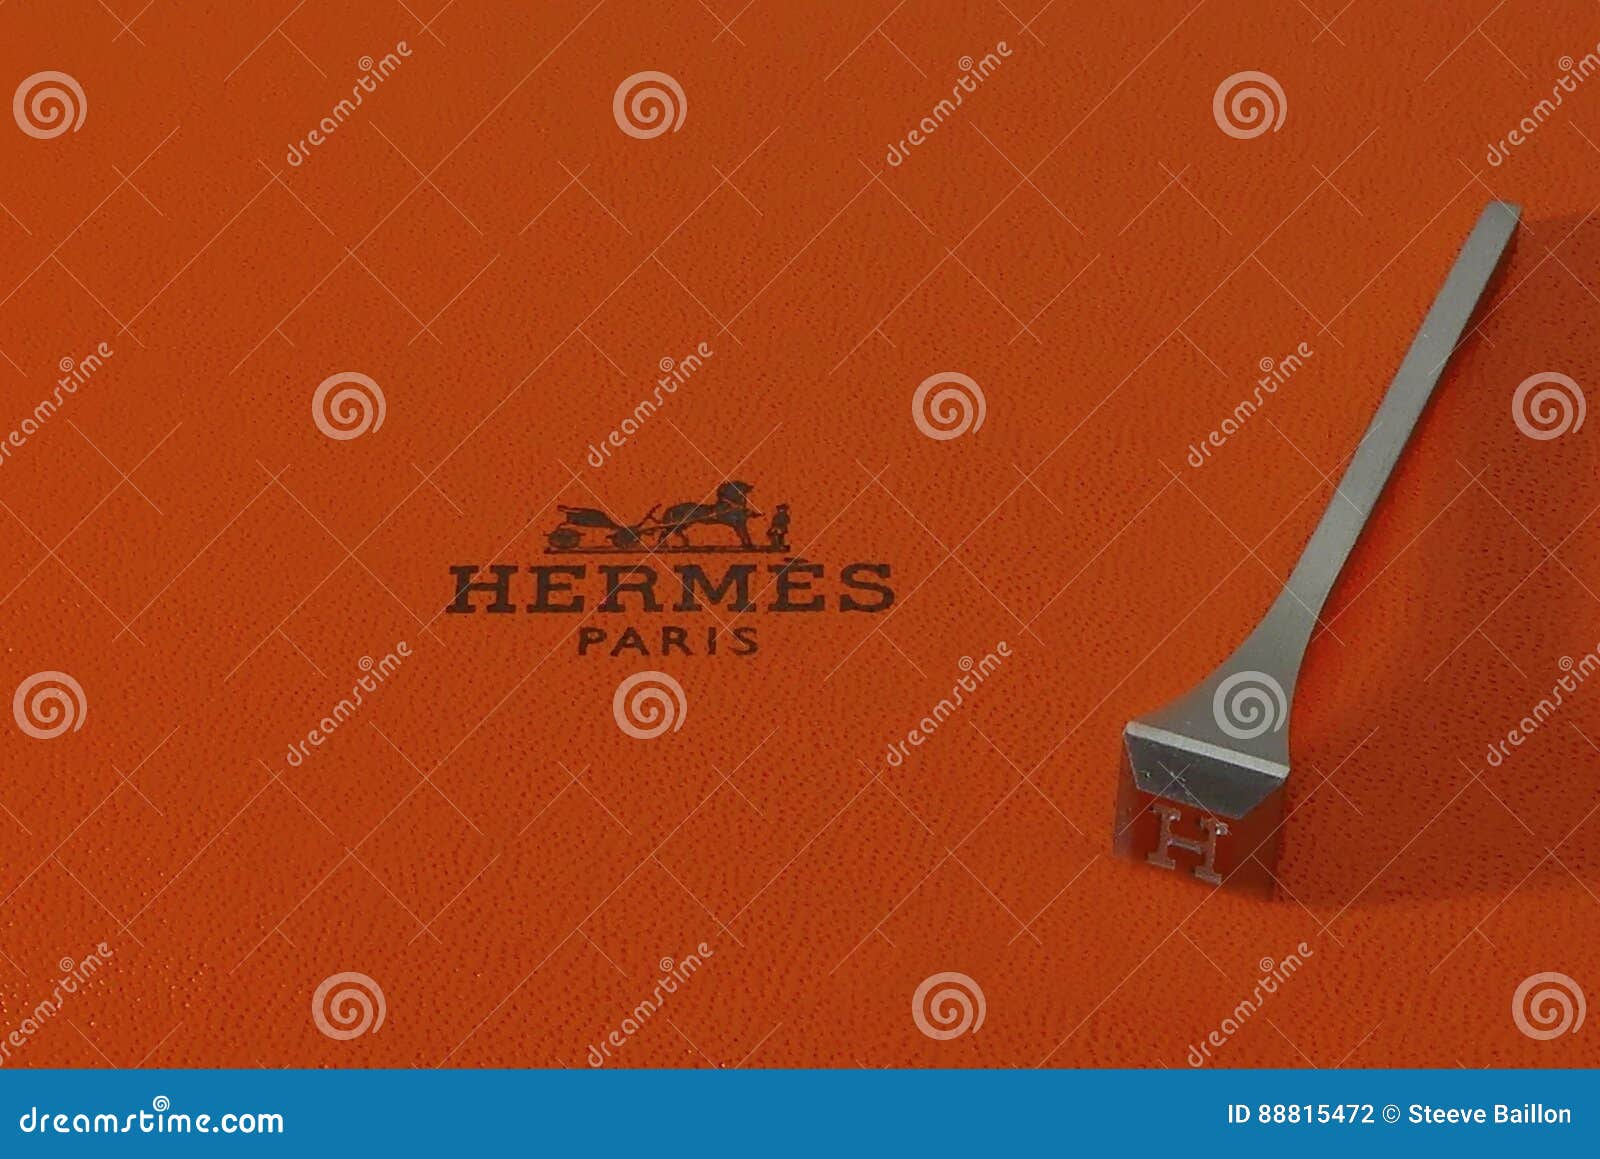 Hermes Wallpaper - Etsy